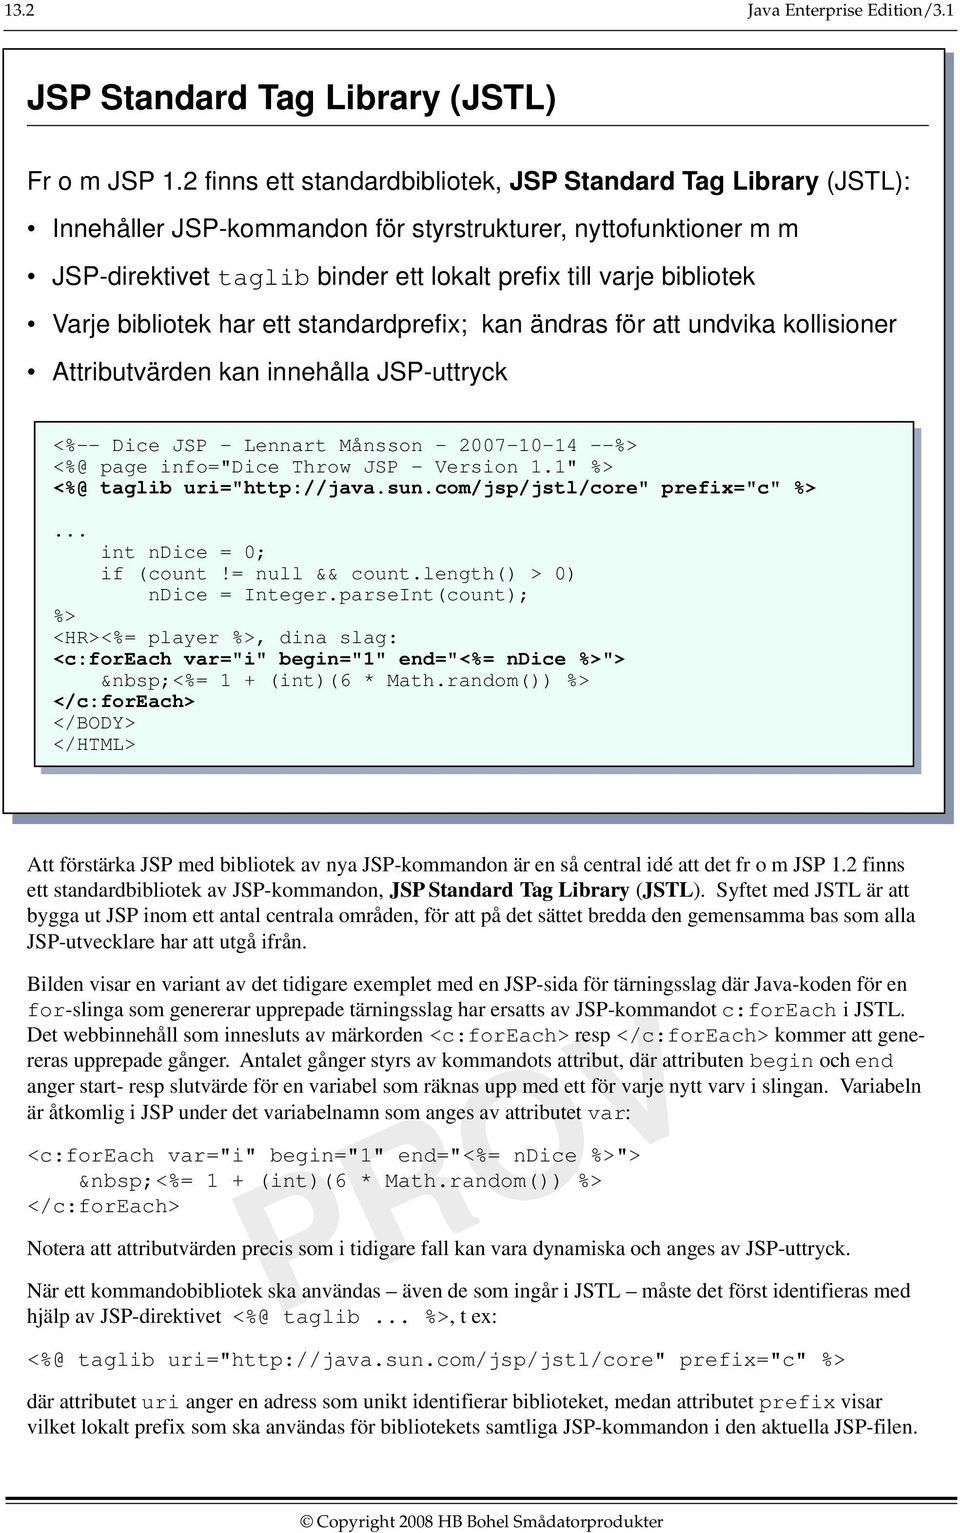 Varje bibliotek har ett standardprefix; kan ändras för att undvika kollisioner Attributvärden kan innehålla JSP-uttryck <%-- Dice JSP - Lennart Månsson - 2007-10-14 --%> <%@ page info="dice Throw JSP